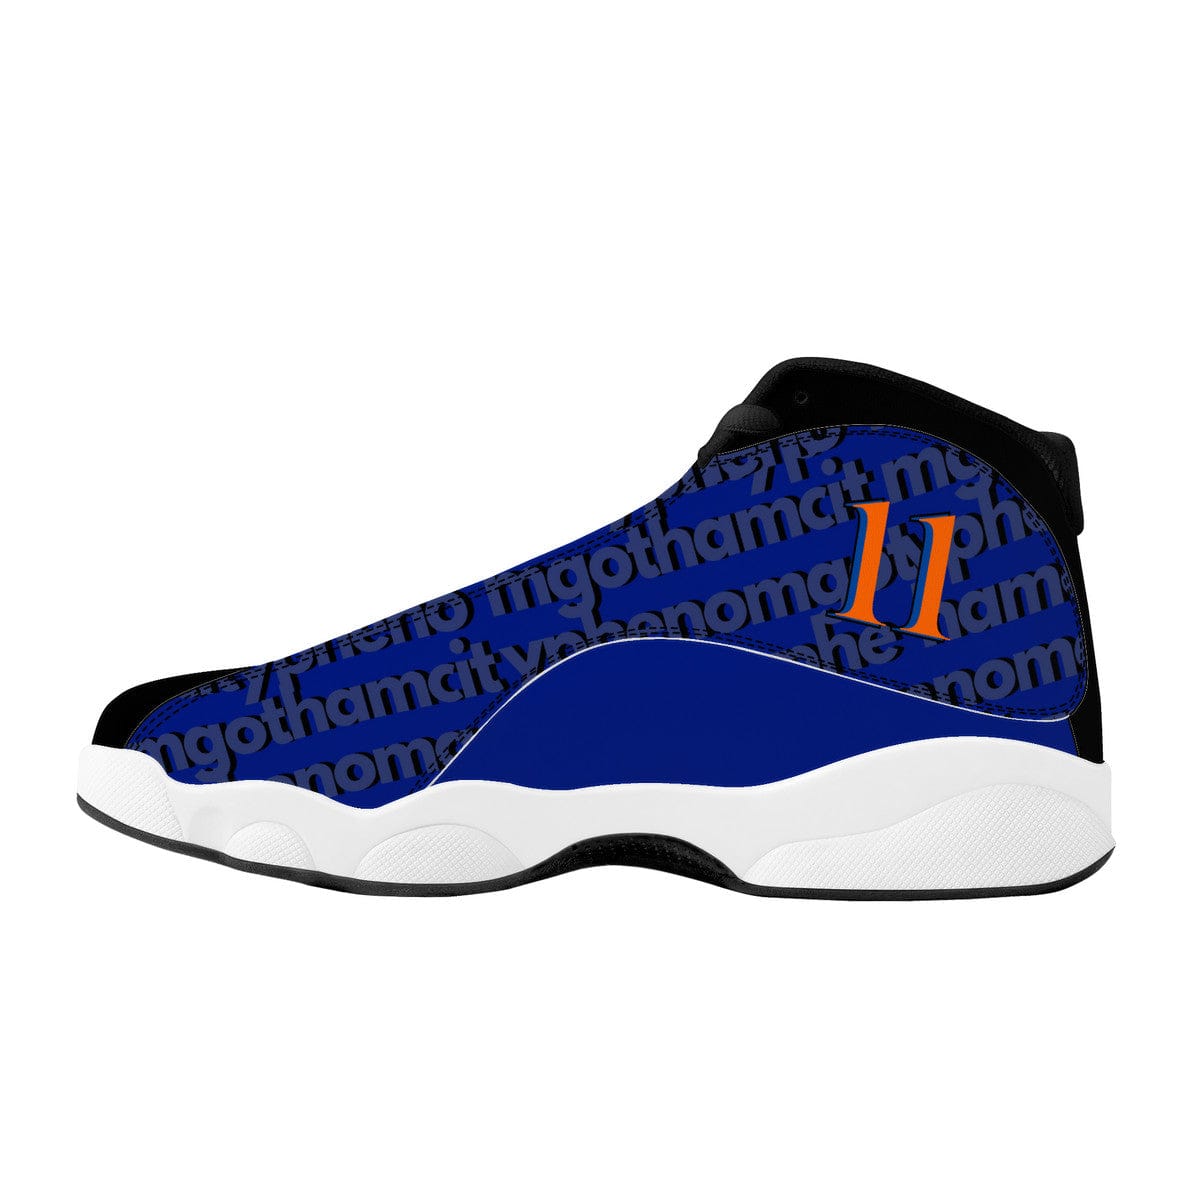 basketball shoes Gotham City phenomenon blue-orange  shoes